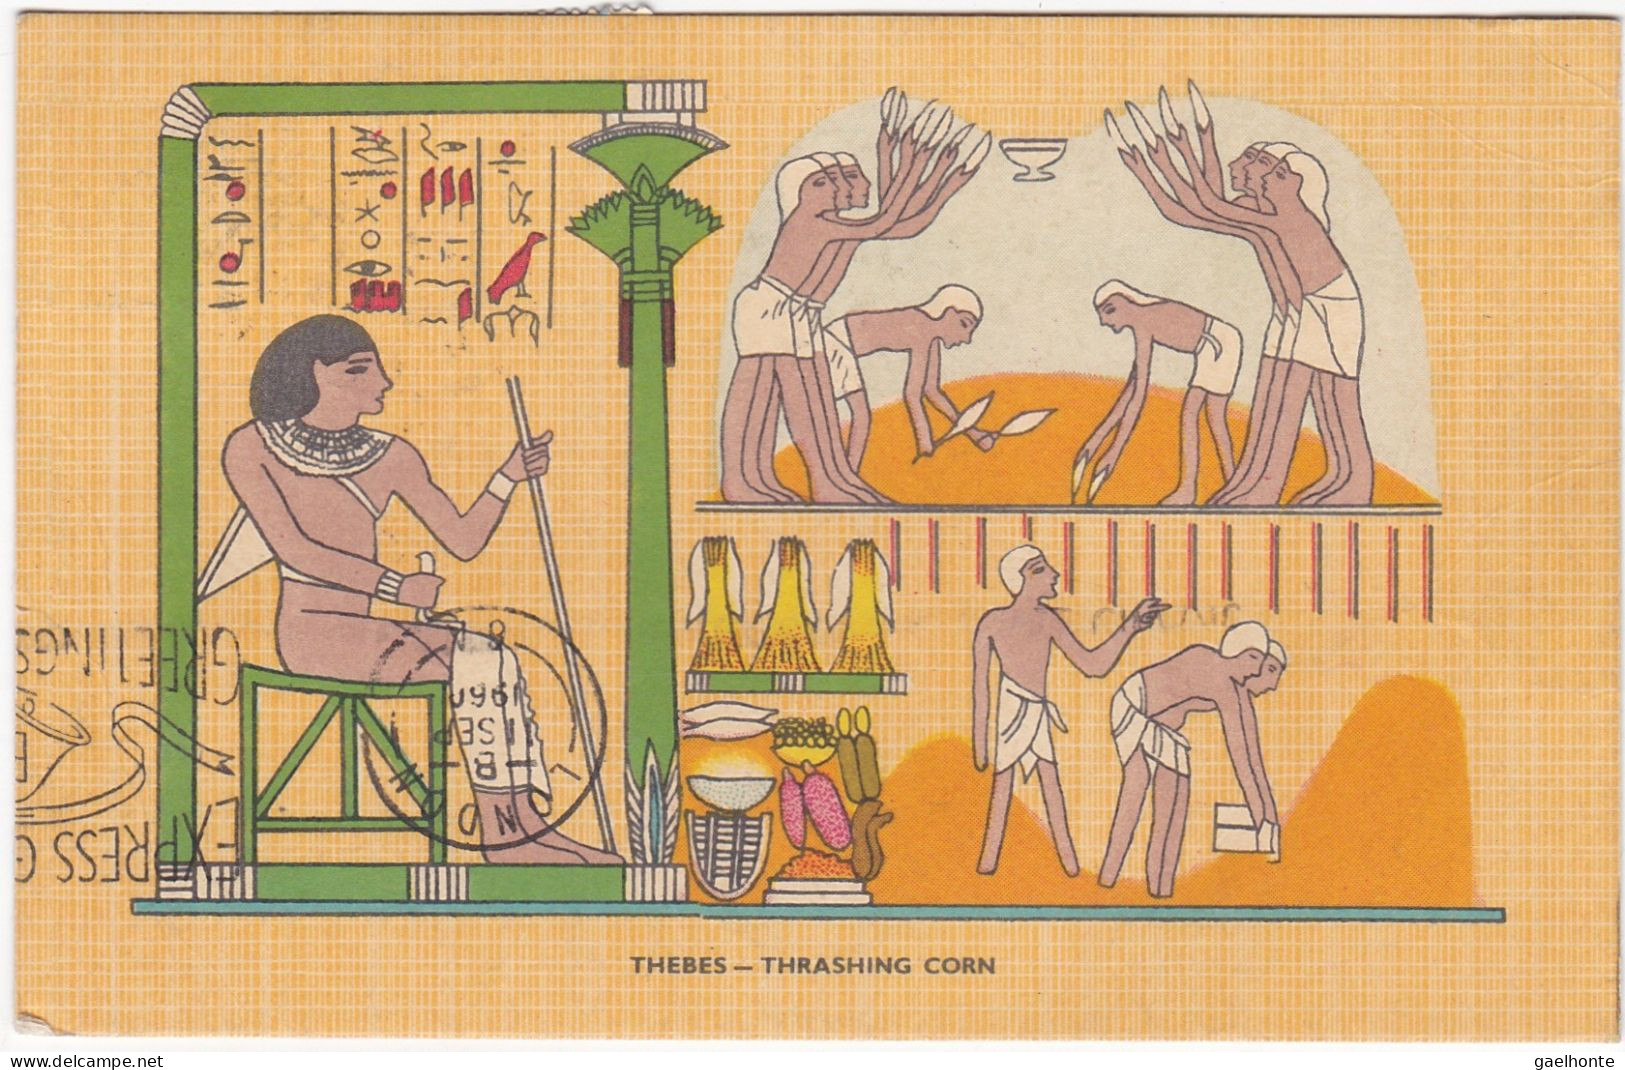 EG037 OEUVRE - PEINTURE EGYPTIENNE REPRESENTANT LA CULTURE ET RECOLTE DU MAÏS - Musea